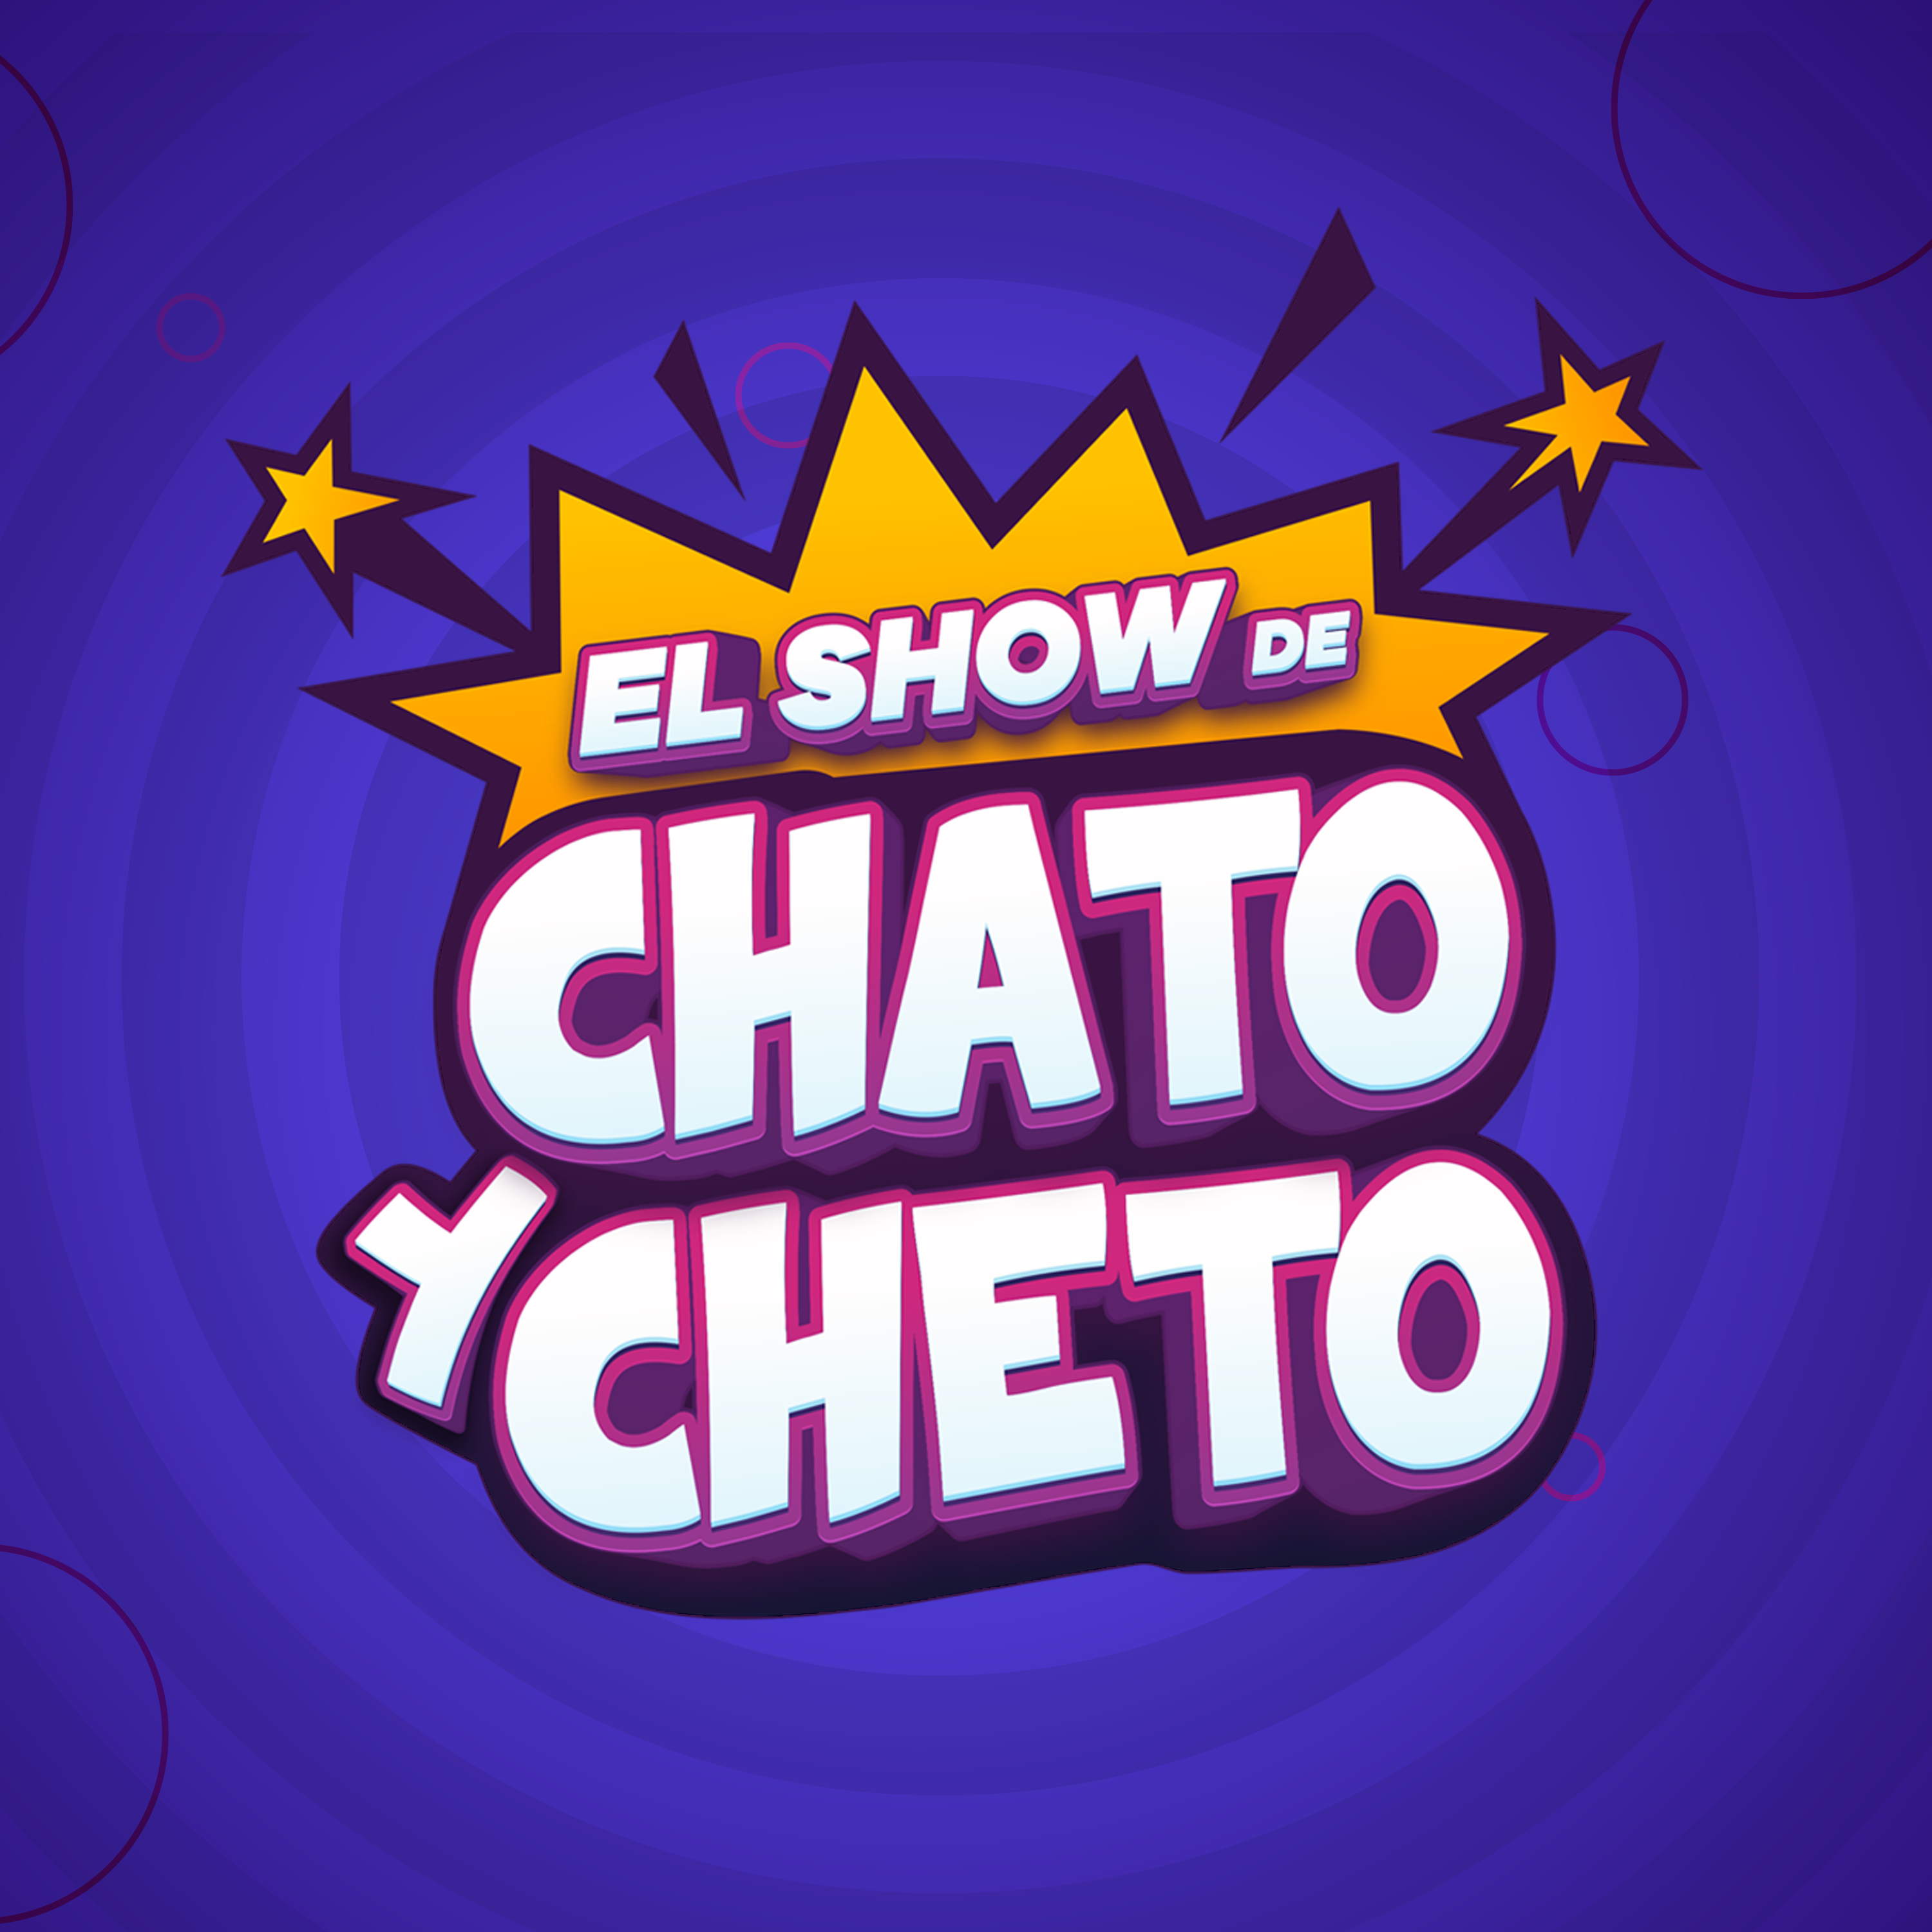 El show de Chato y Cheto